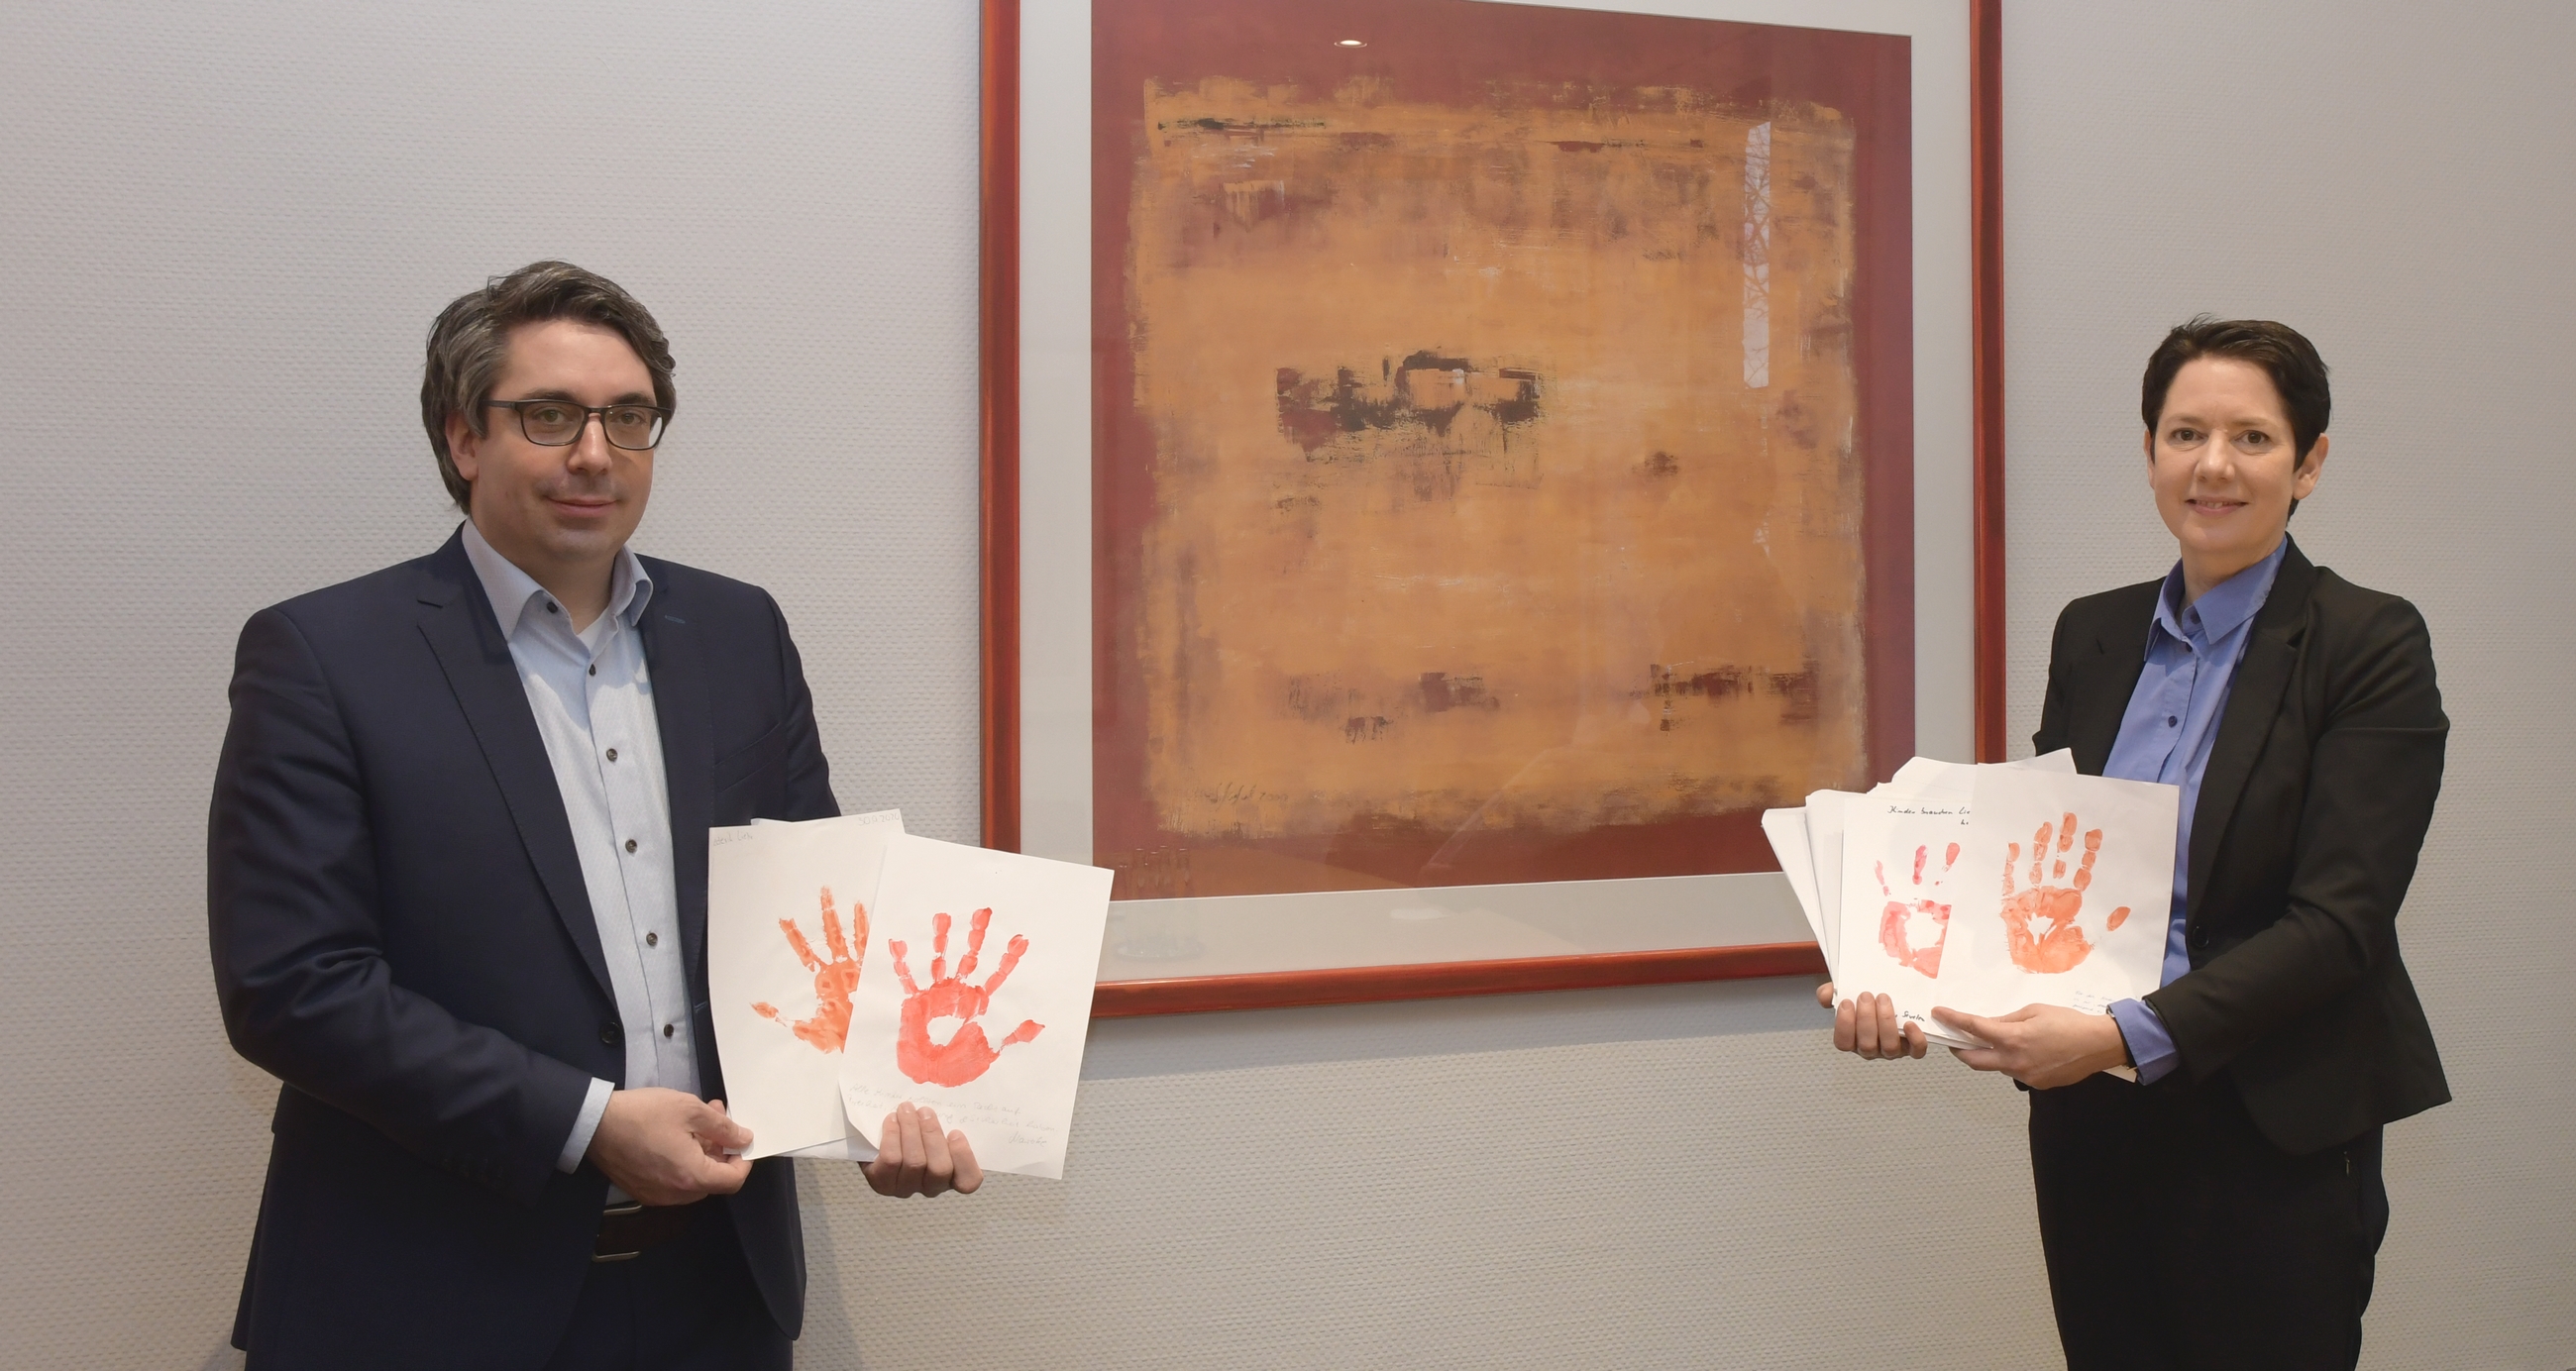 PM21-056-Landrätin Gorißen übergibt 260 rote Handabdrücke auf Papier an Stefan Rouenhoff, Mitglied des Bundestags 